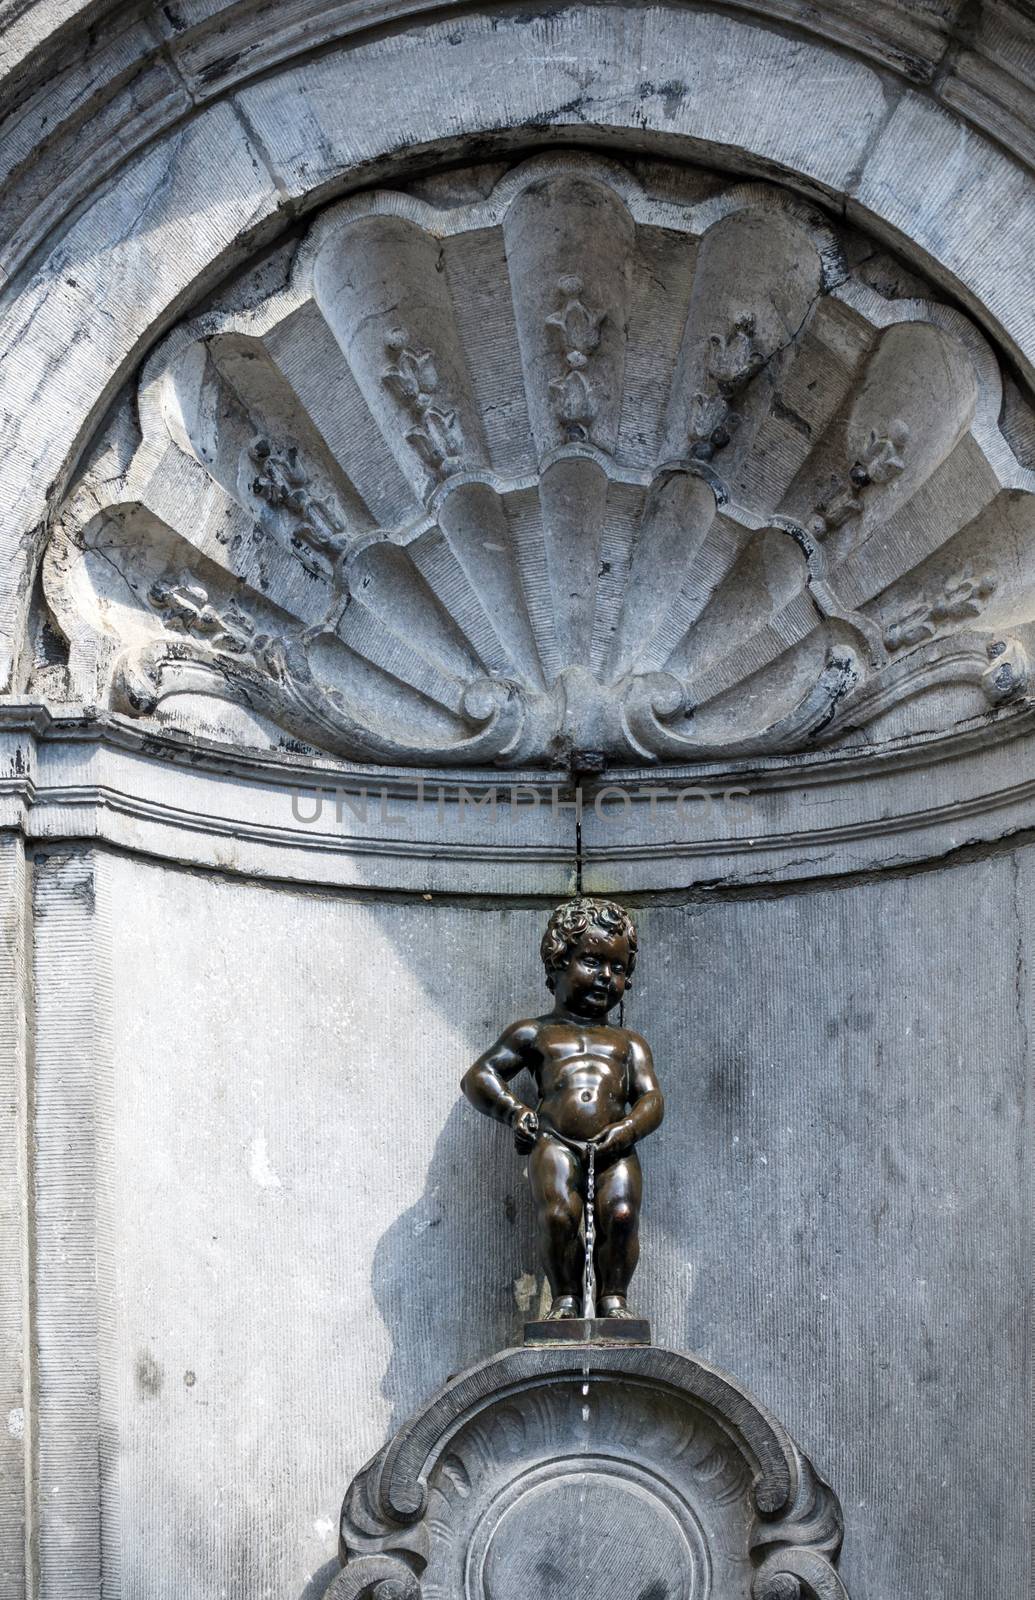 Manneken Pis (Little man Pee), a bronze sculpture in Brussels, Belgium